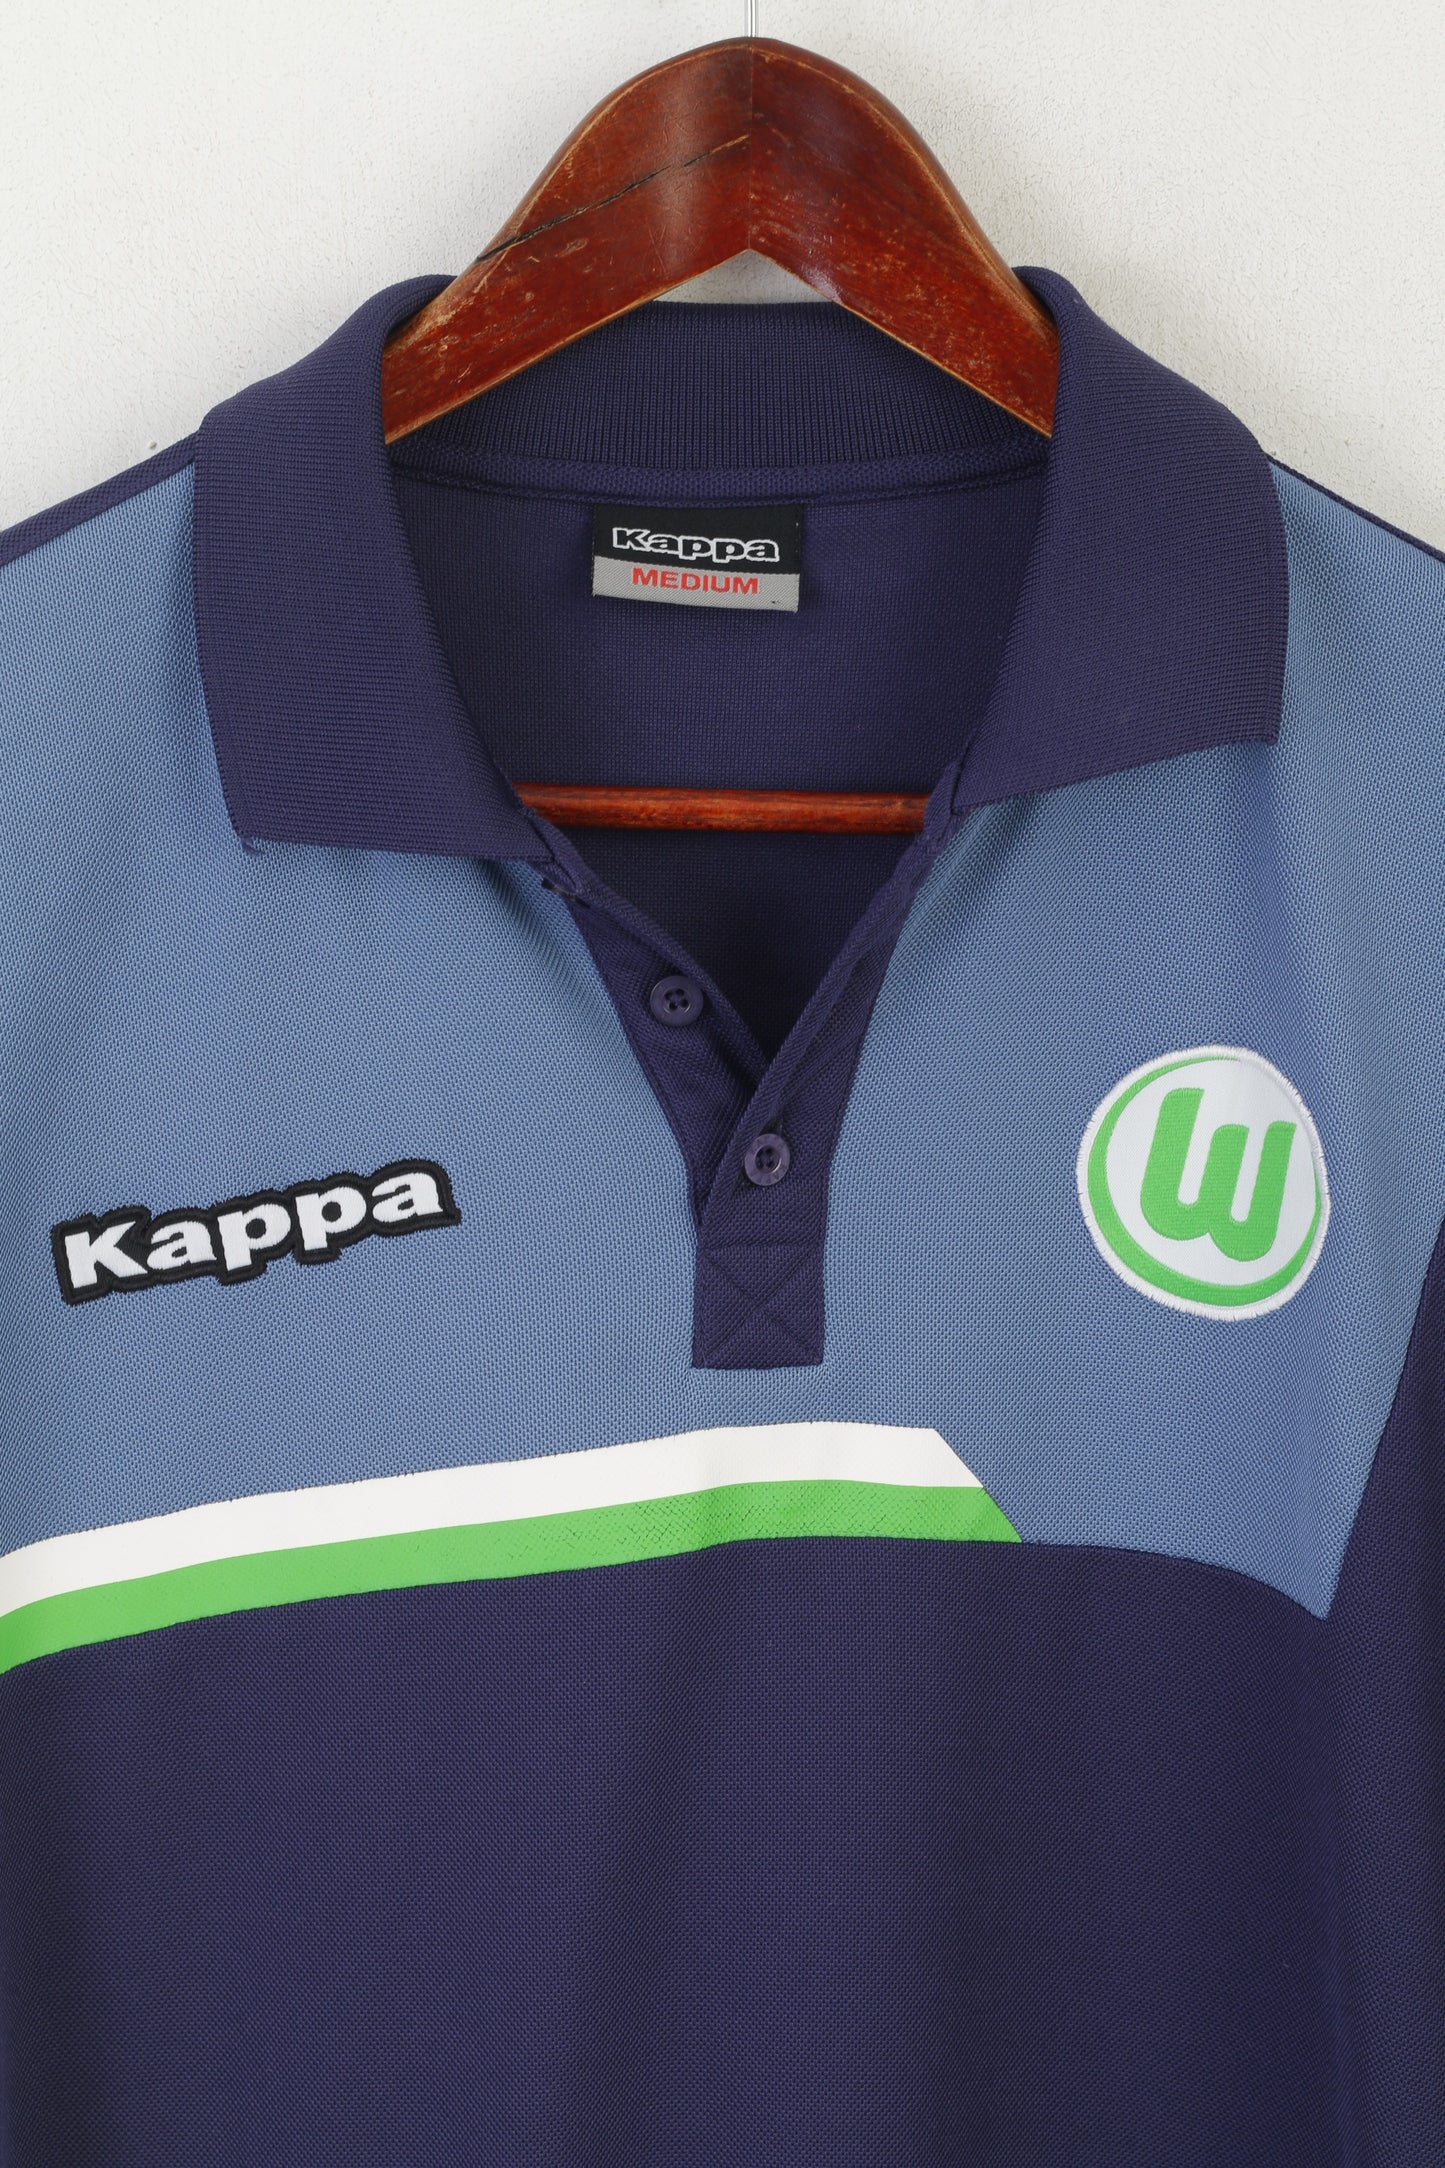 Kappa Men M Polo Shirt Navy Shiny Vintage Tennis Sportswear Logo Jersey Top